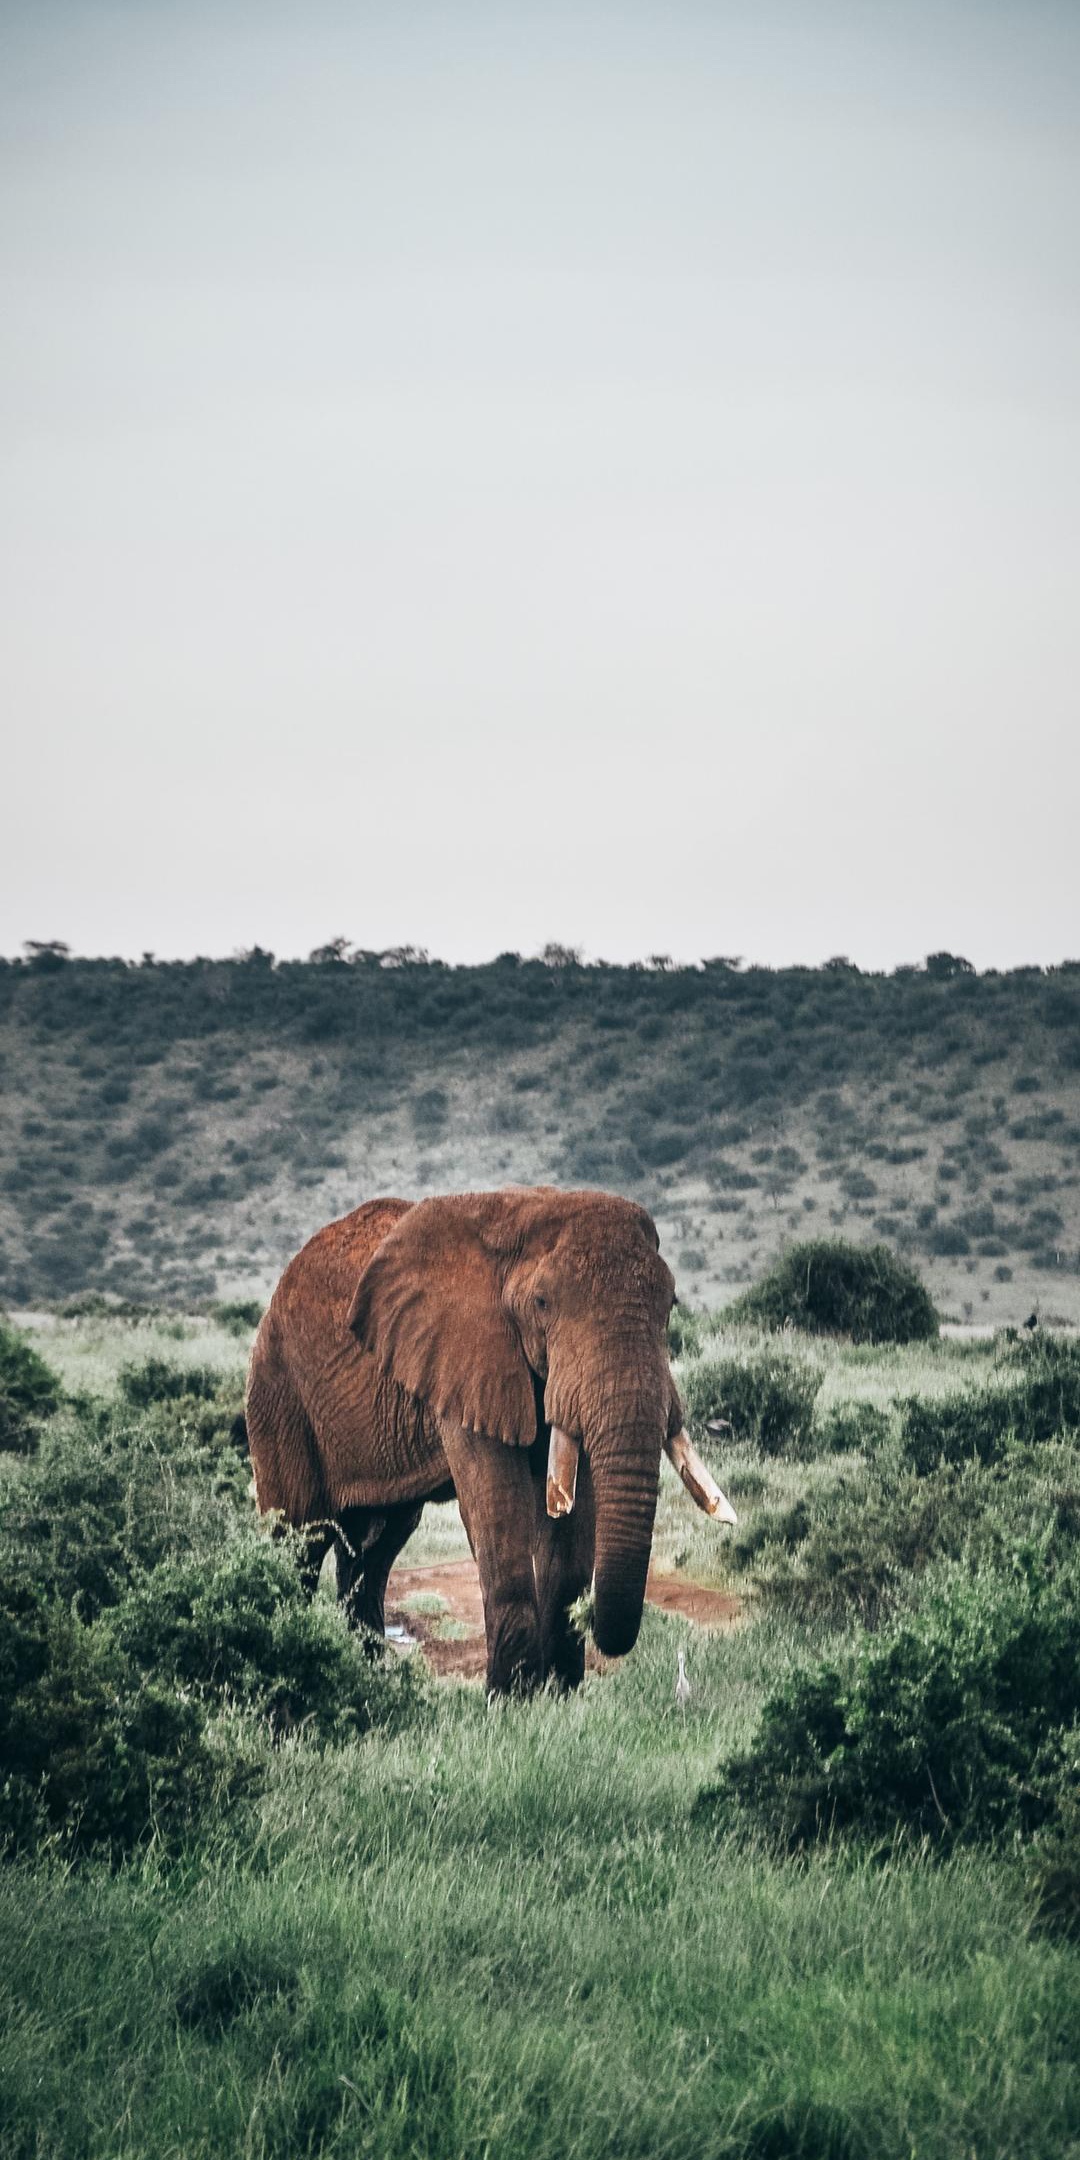 荒野中孤独的大象